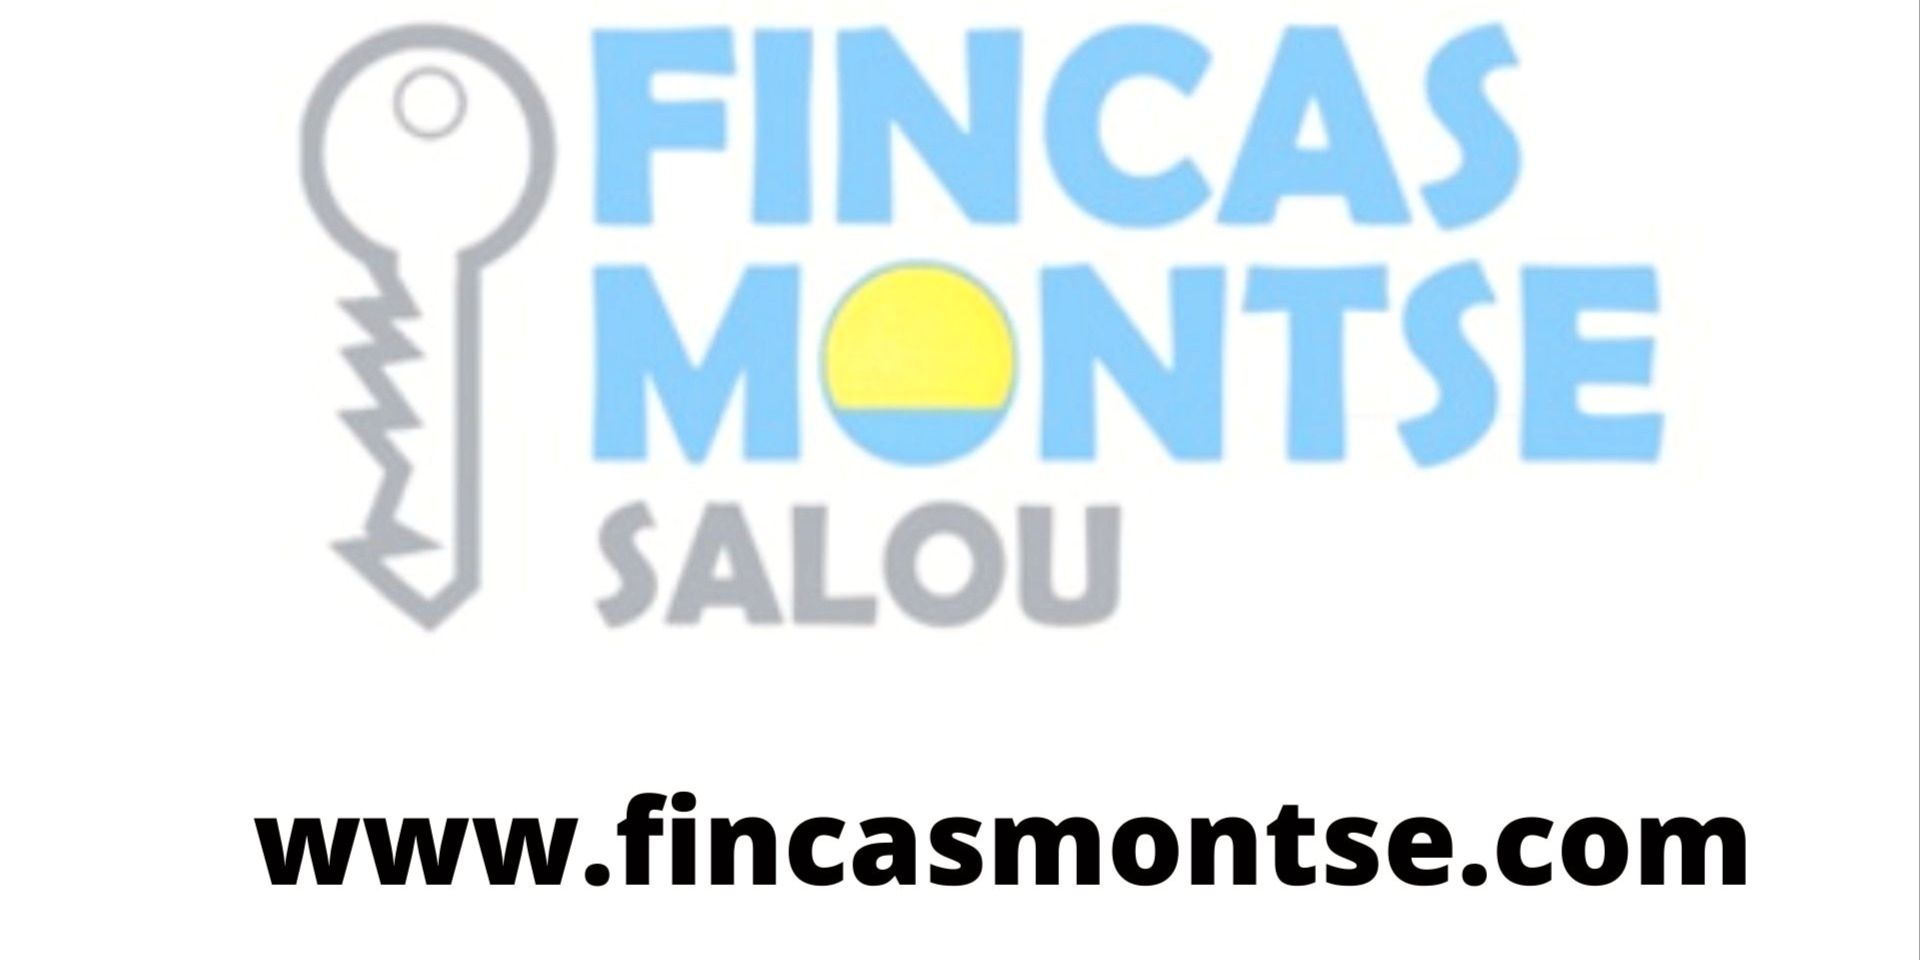 FINCAS MONTSE SALOU, S.L